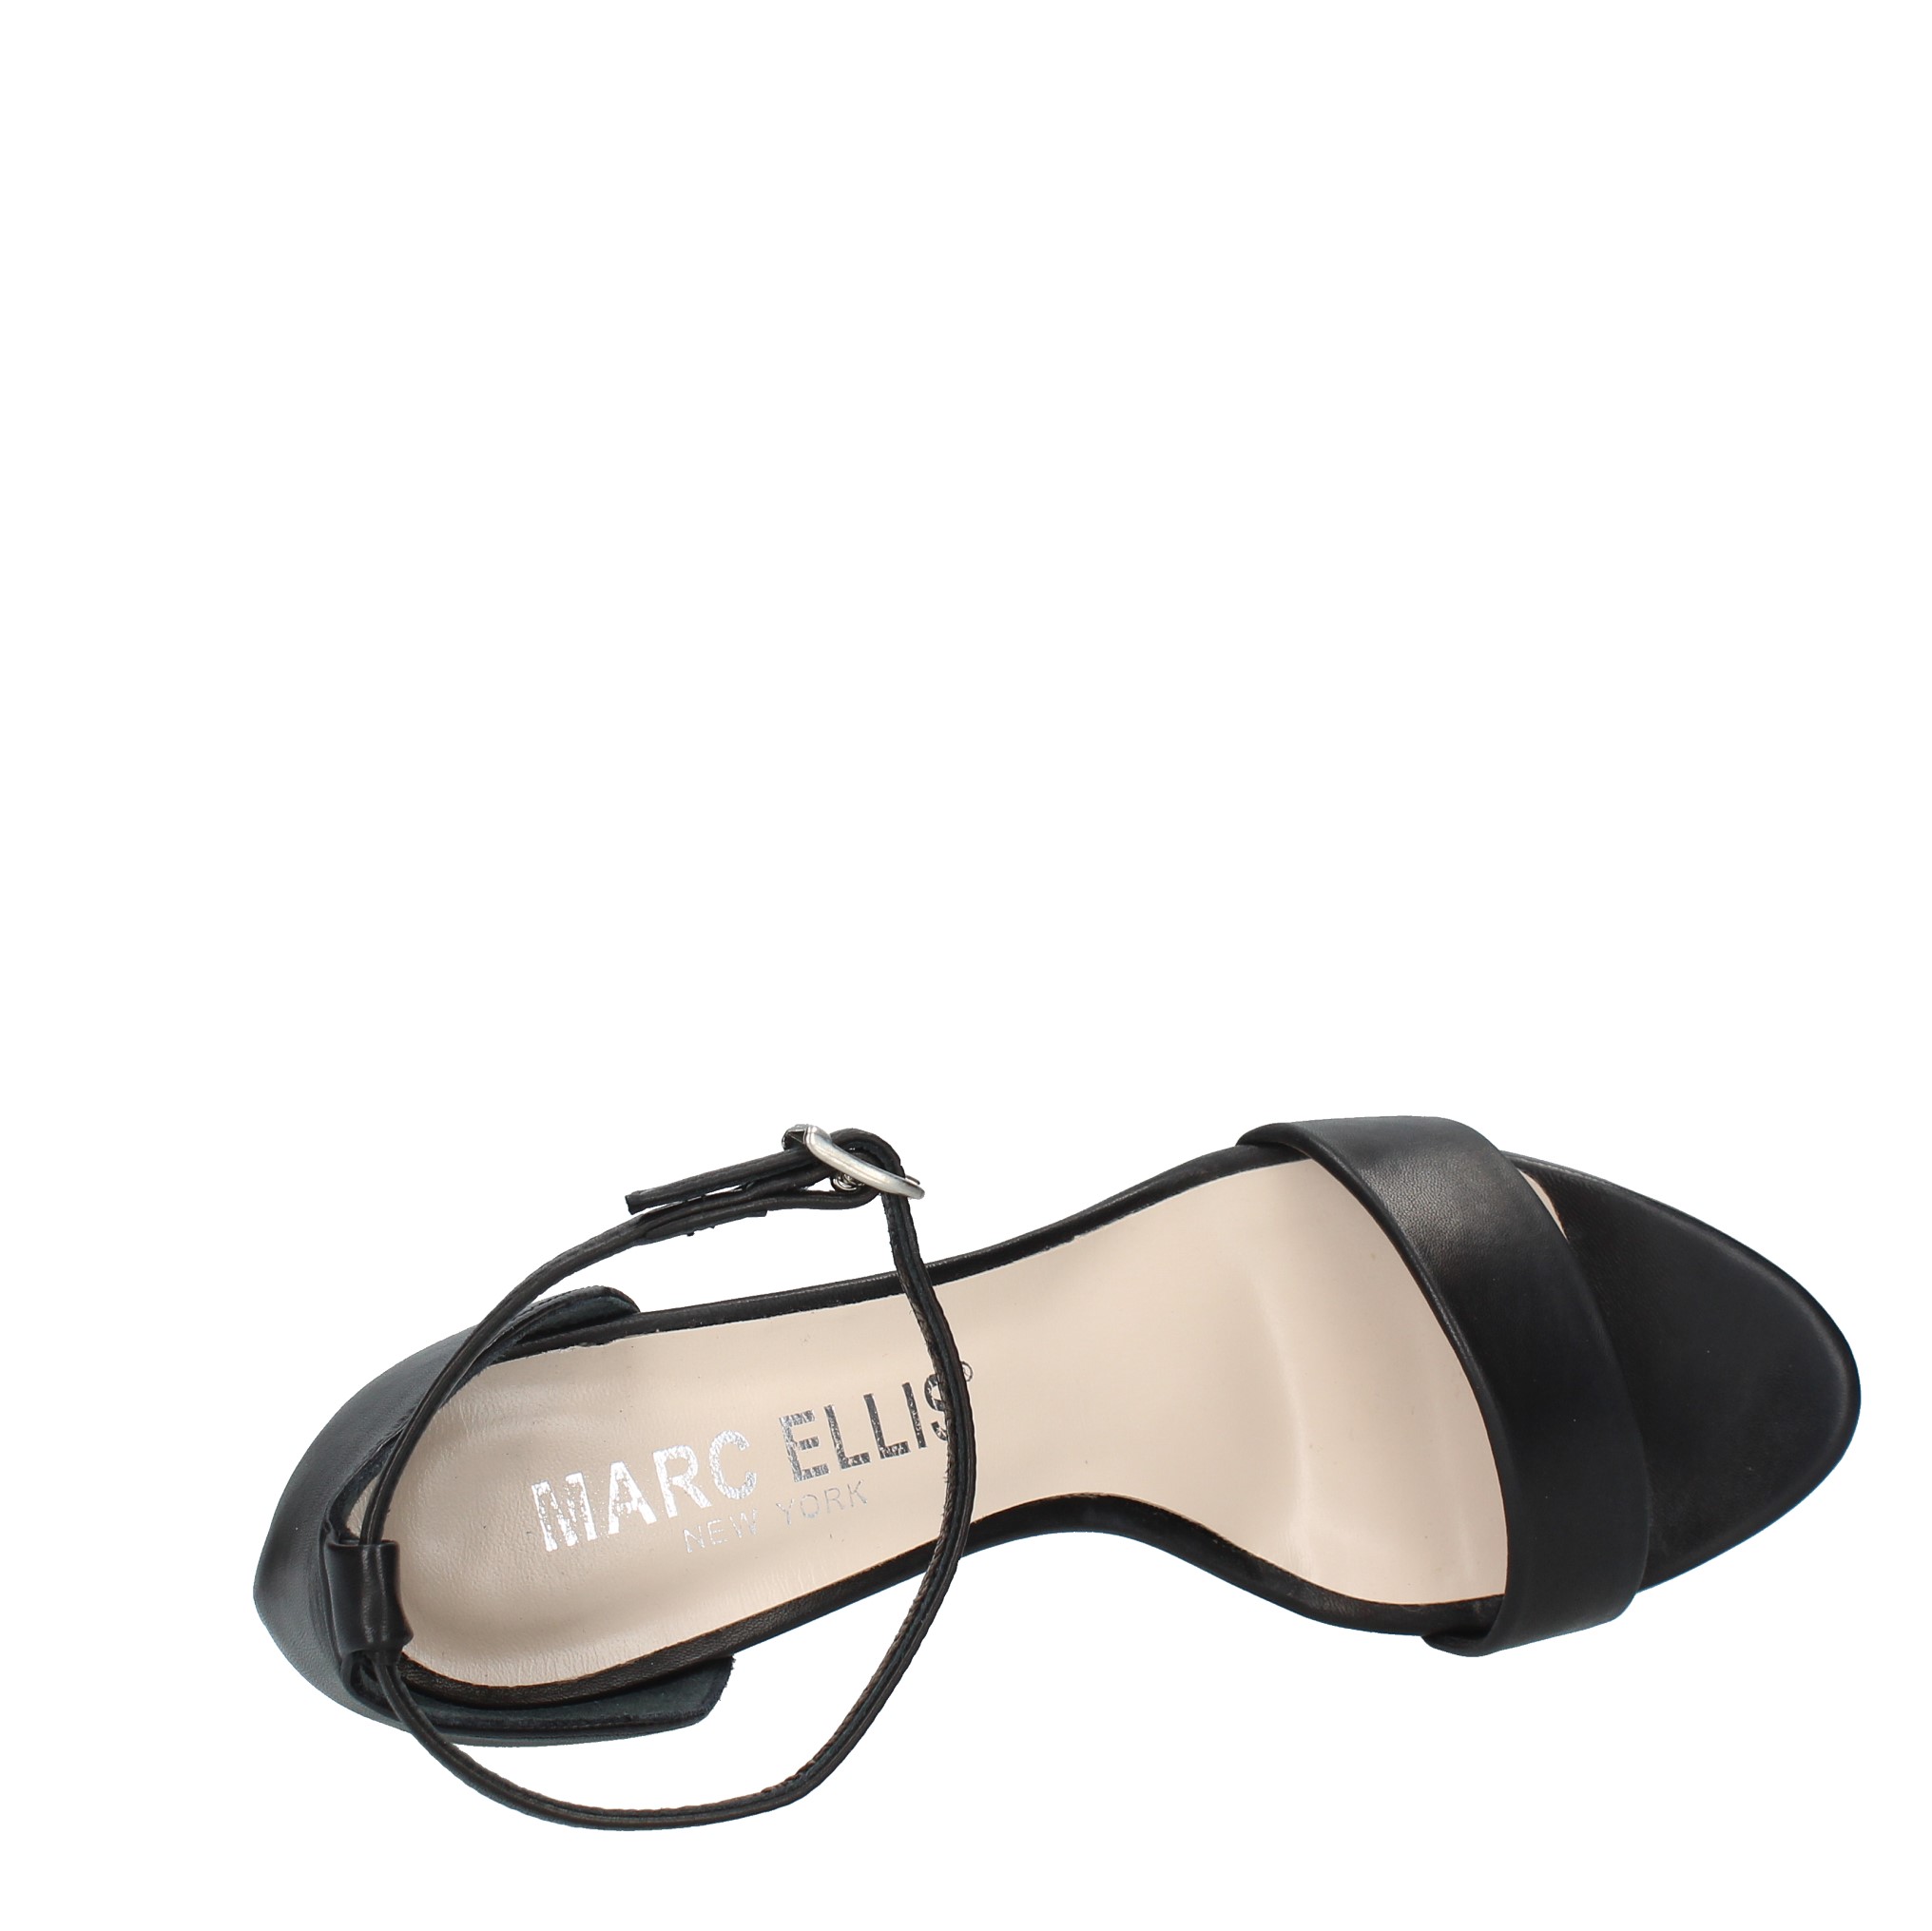 sandali marc ellis - MARC ELLIS - Ginevra calzature